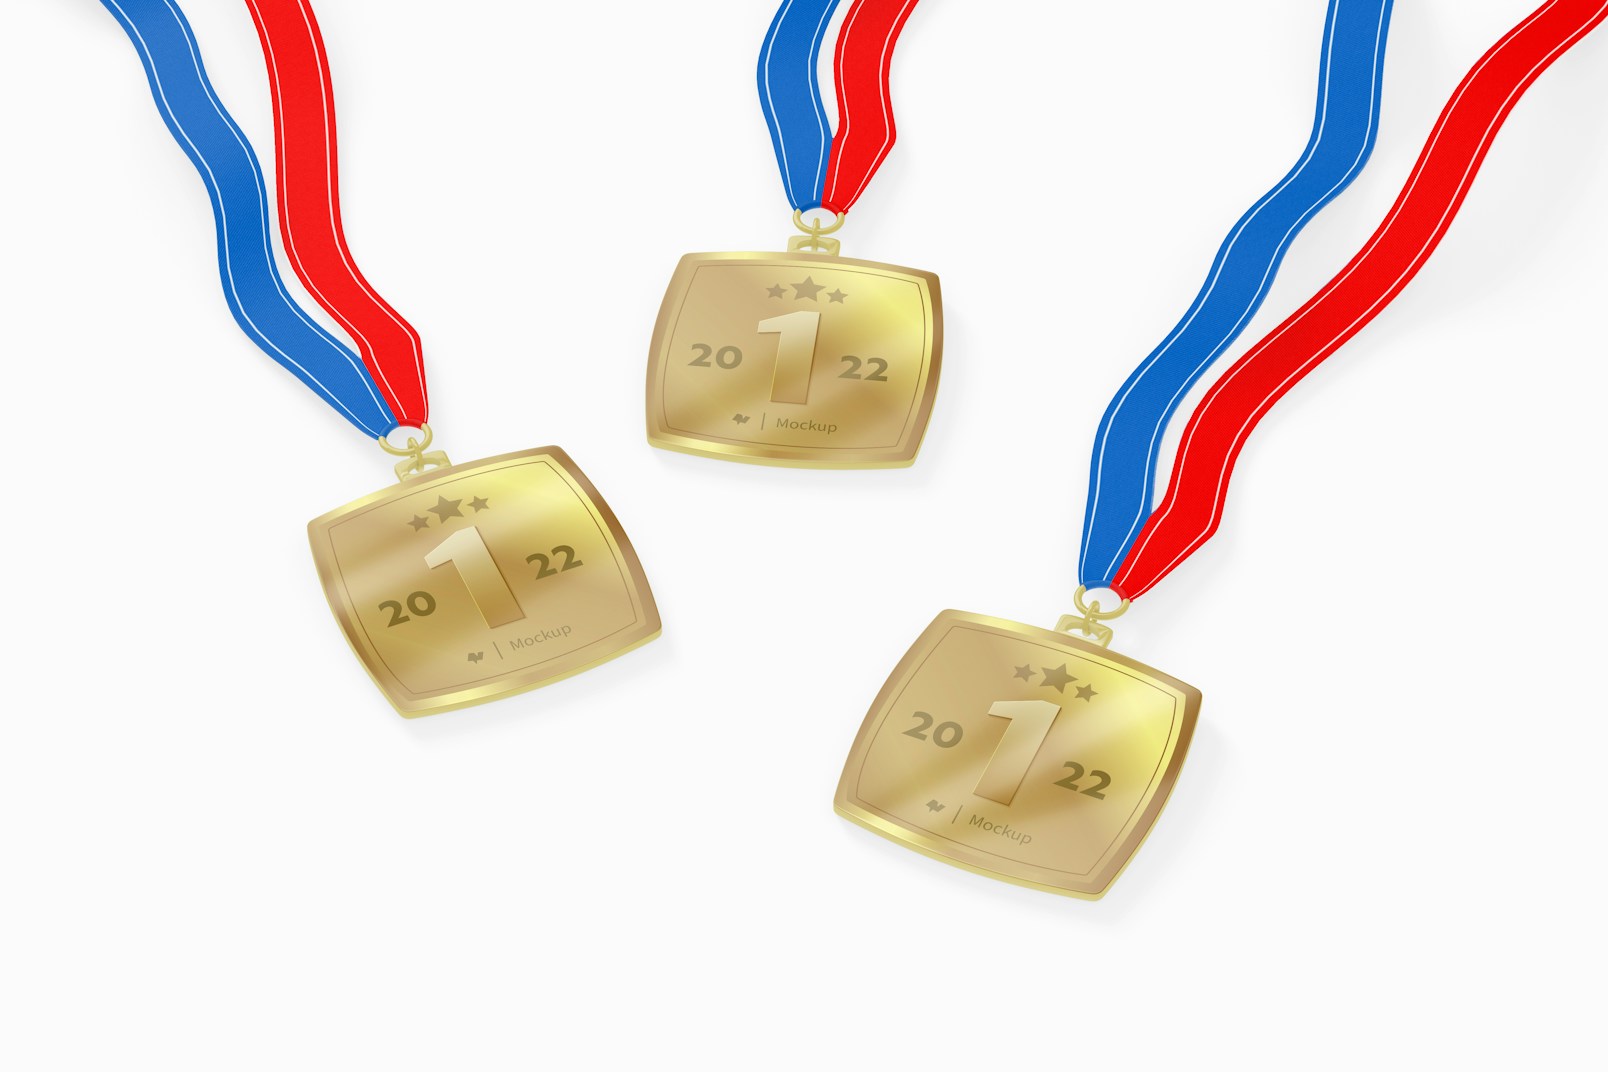 Square Distinction Medals Mockup